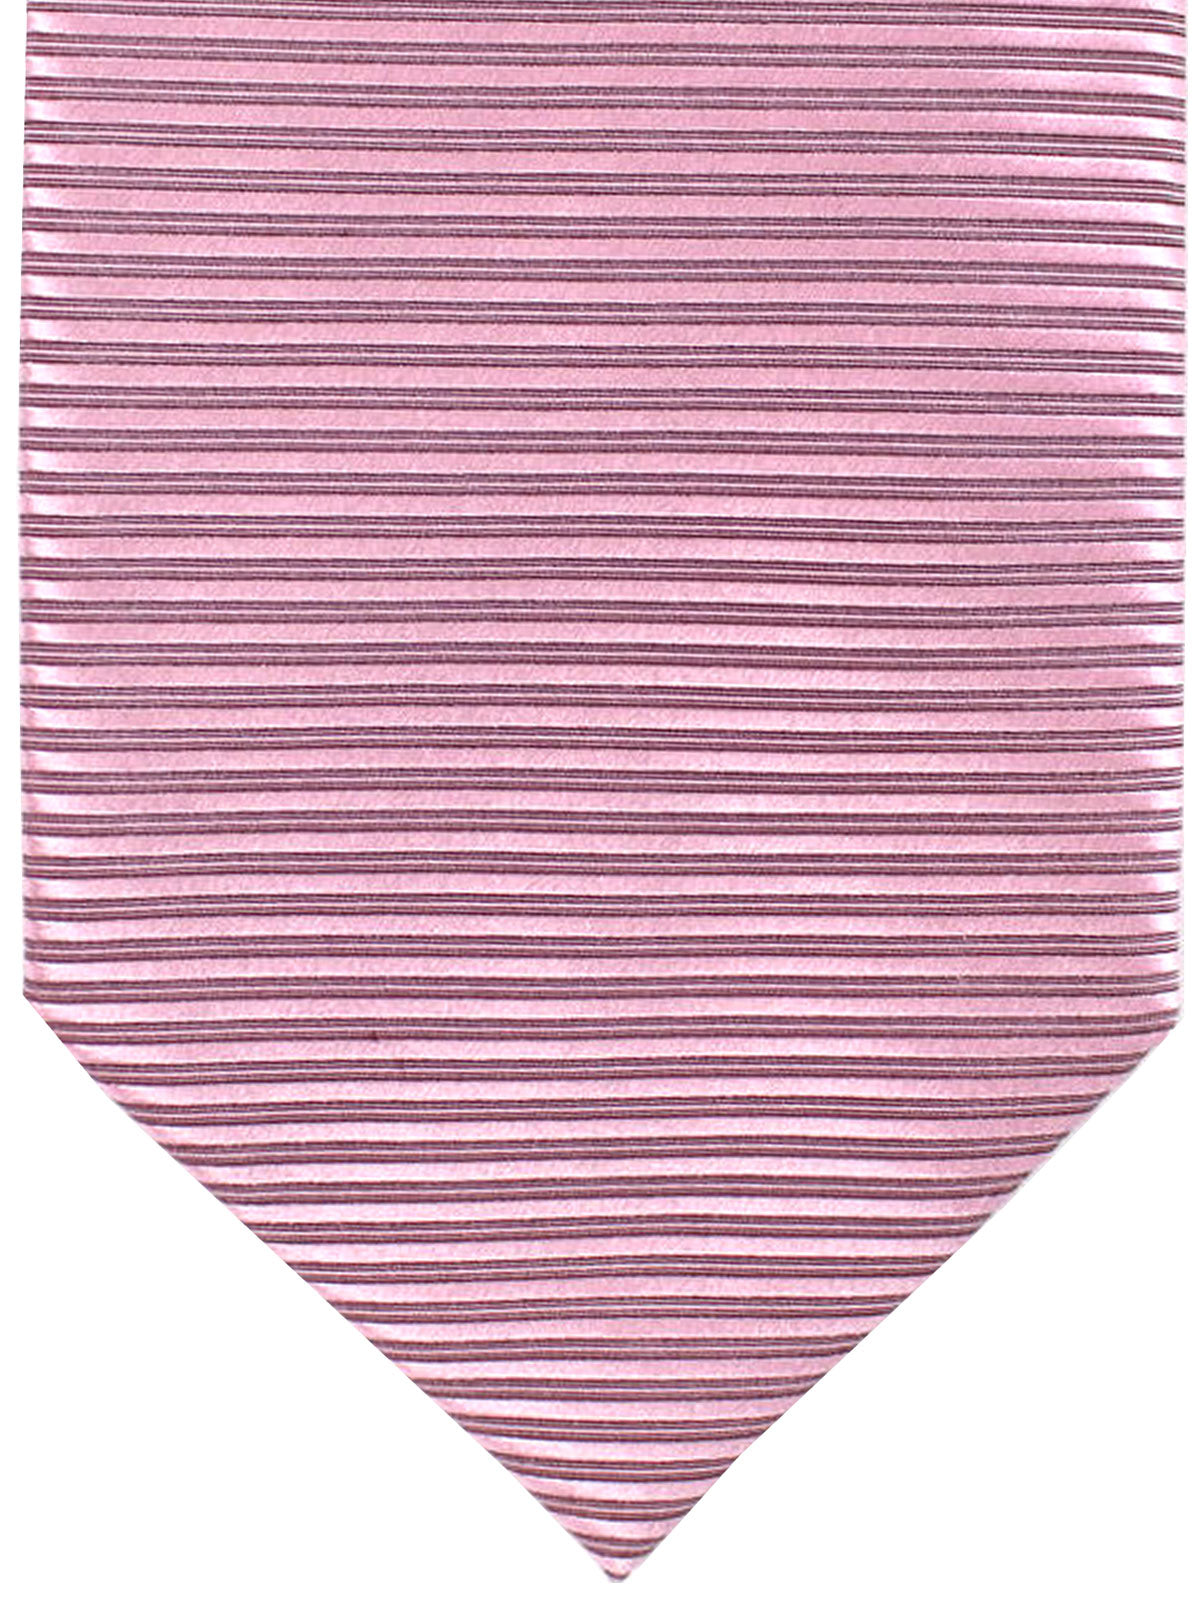 Tom Ford Silk Tie Dust Pink Horizontal Grosgrain